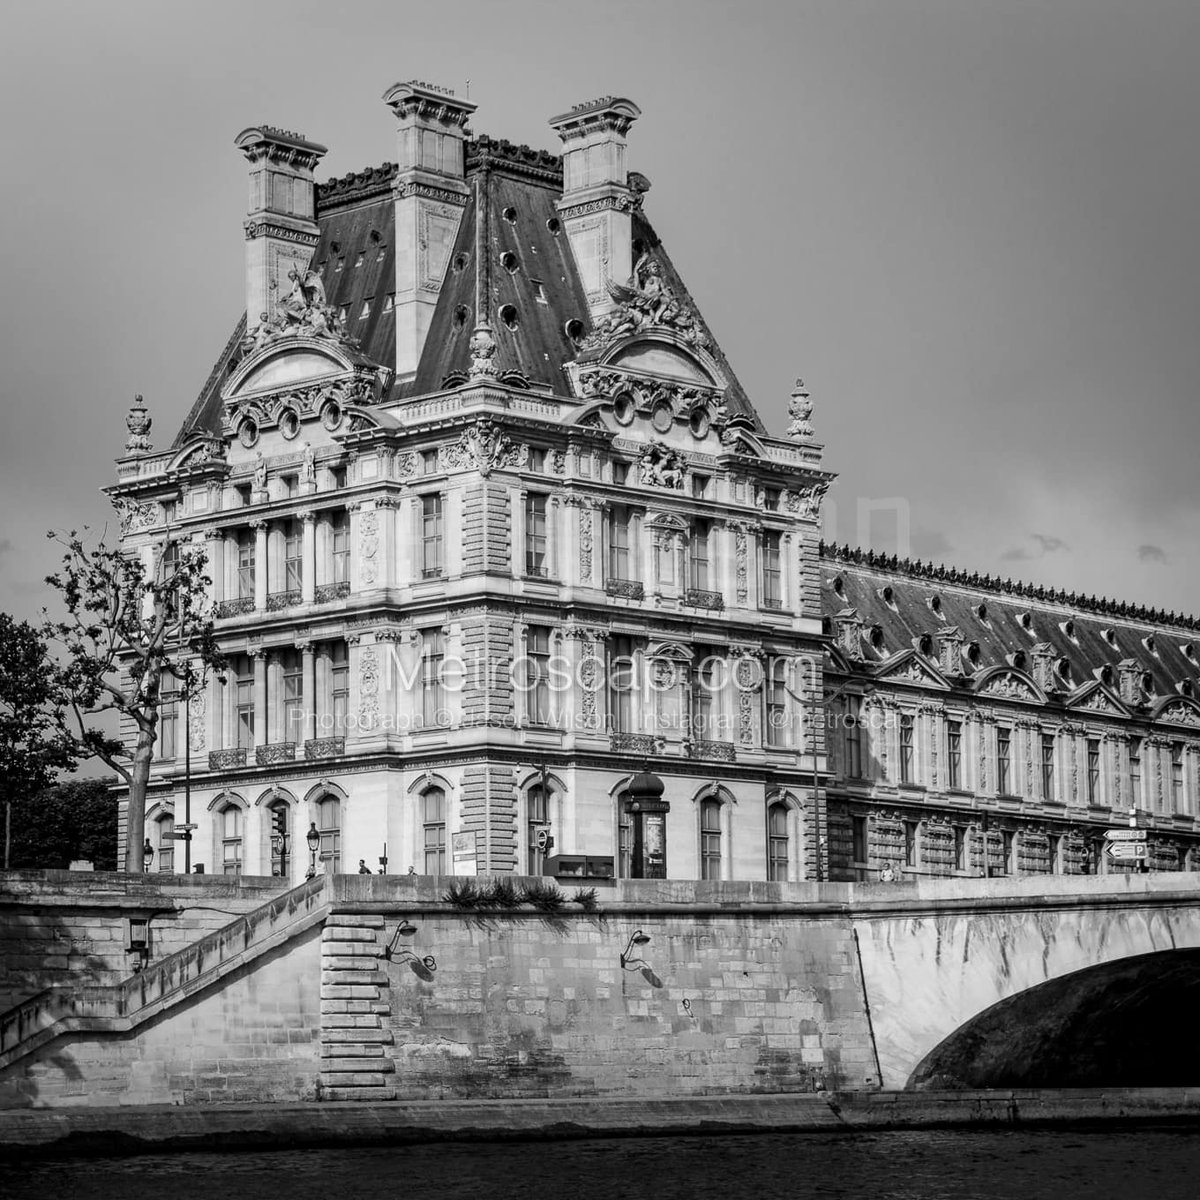 Paris pictures Black & White: The Louvre from the Seine #Paris #france #louvre #champselysees #arcdetriomphe #trocadero #notredame #seine #BlackWhite | metroscap.com/paris-cityscap…